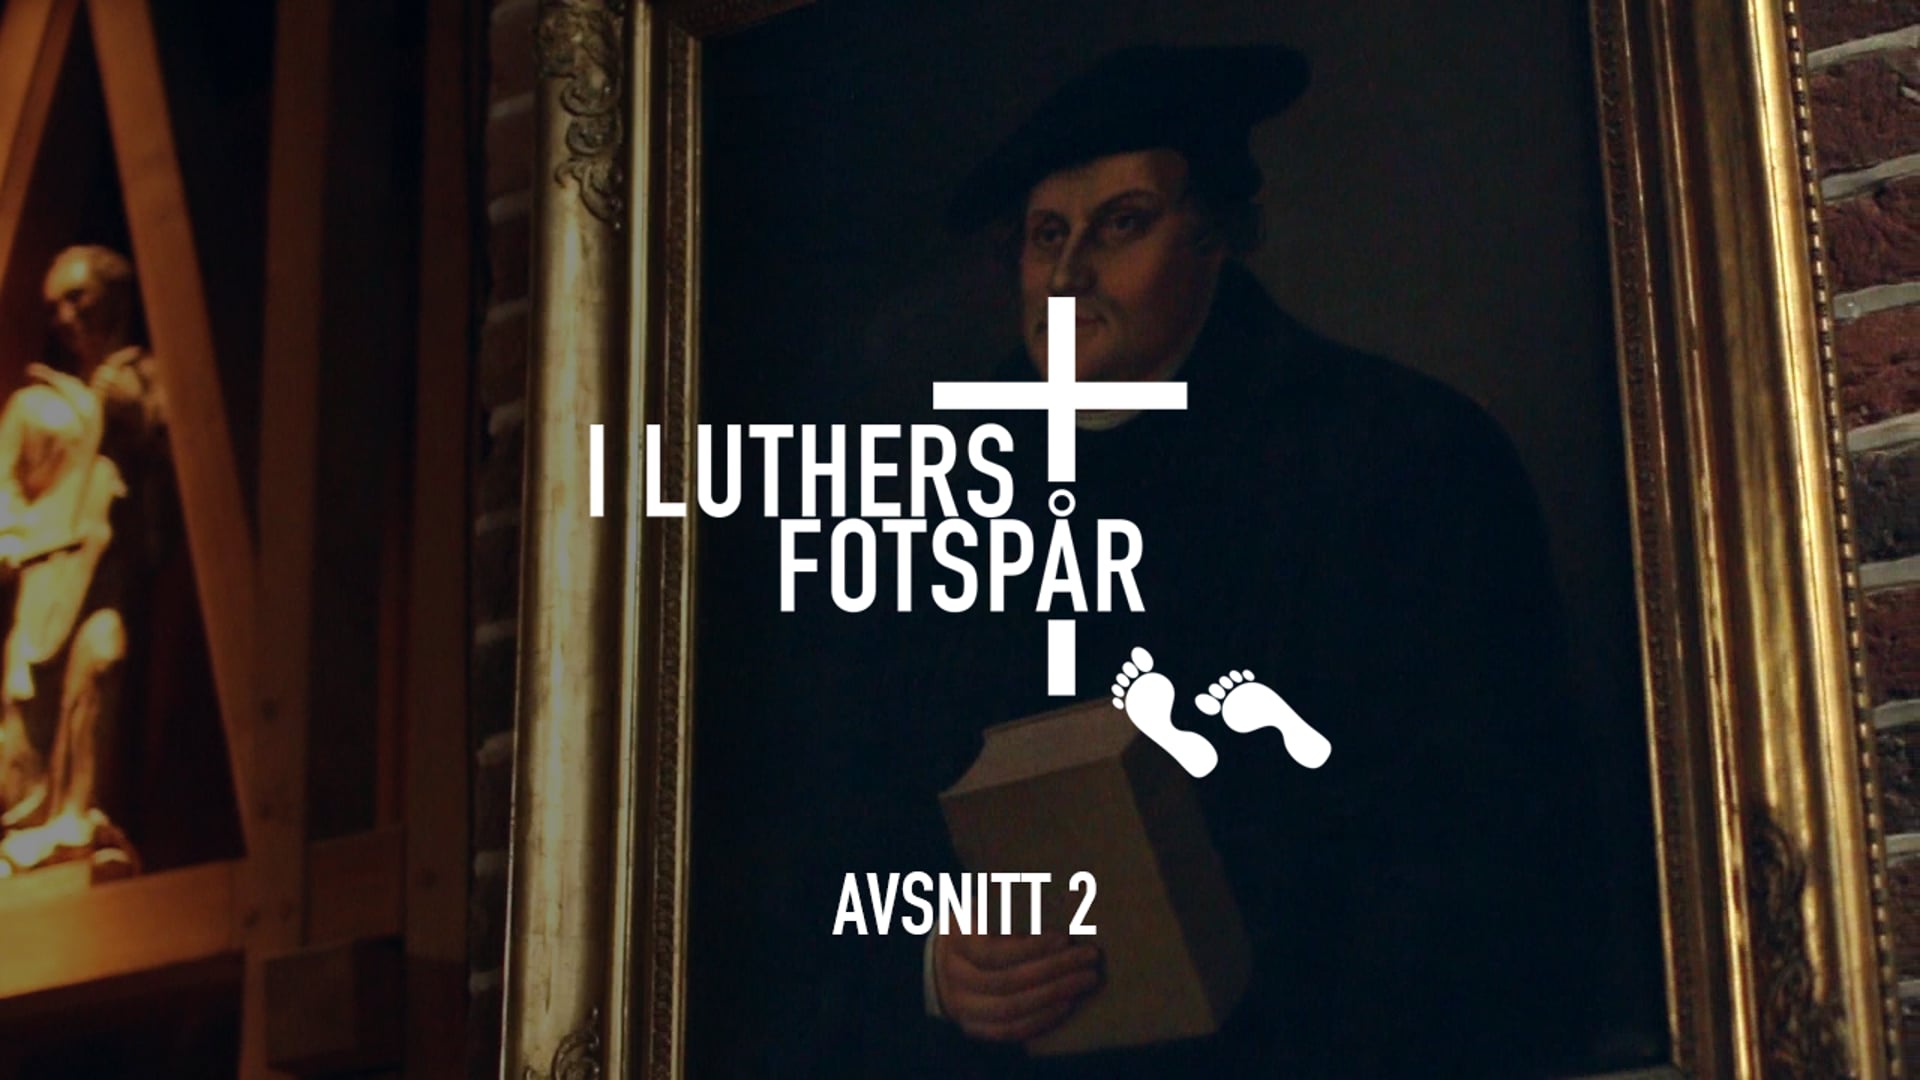 I Luthers fotspår – Avsnitt 2